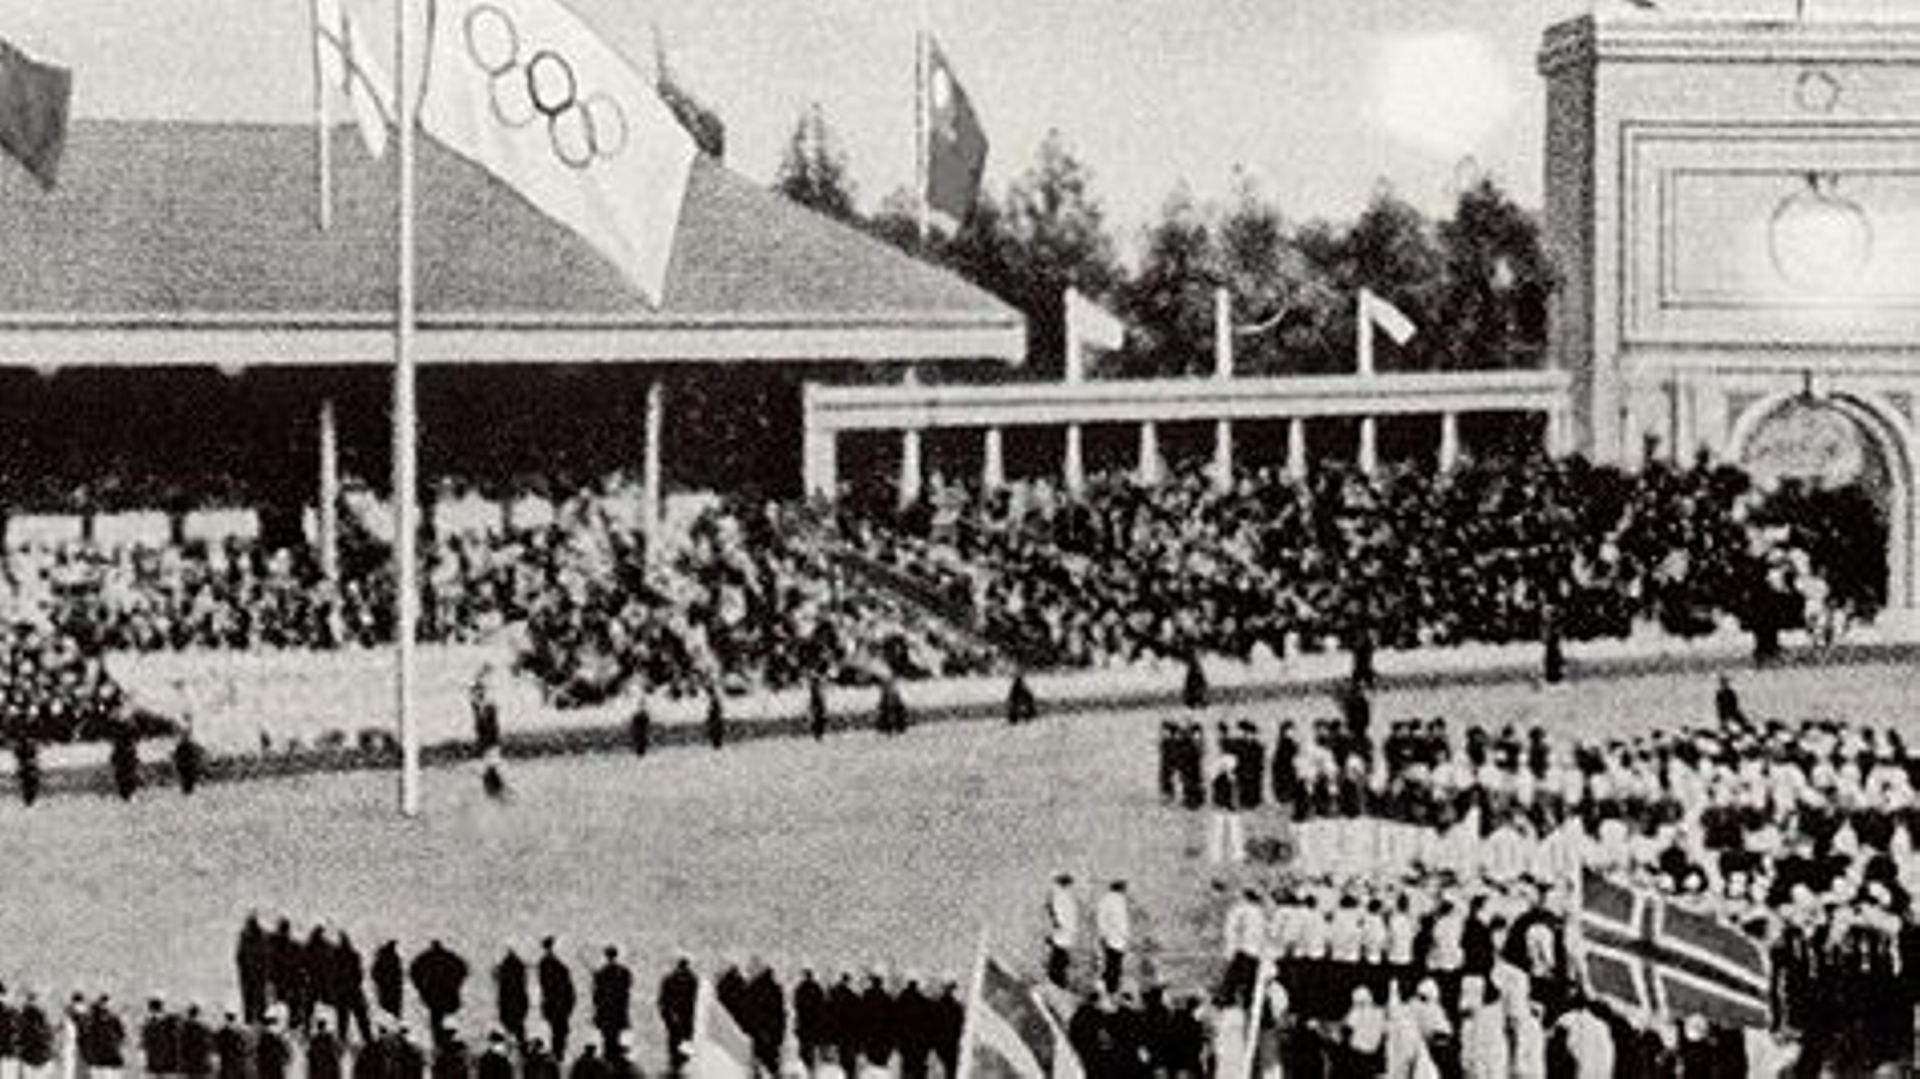 Le drapeau olympique dans le stade d'Anvers, en 1920